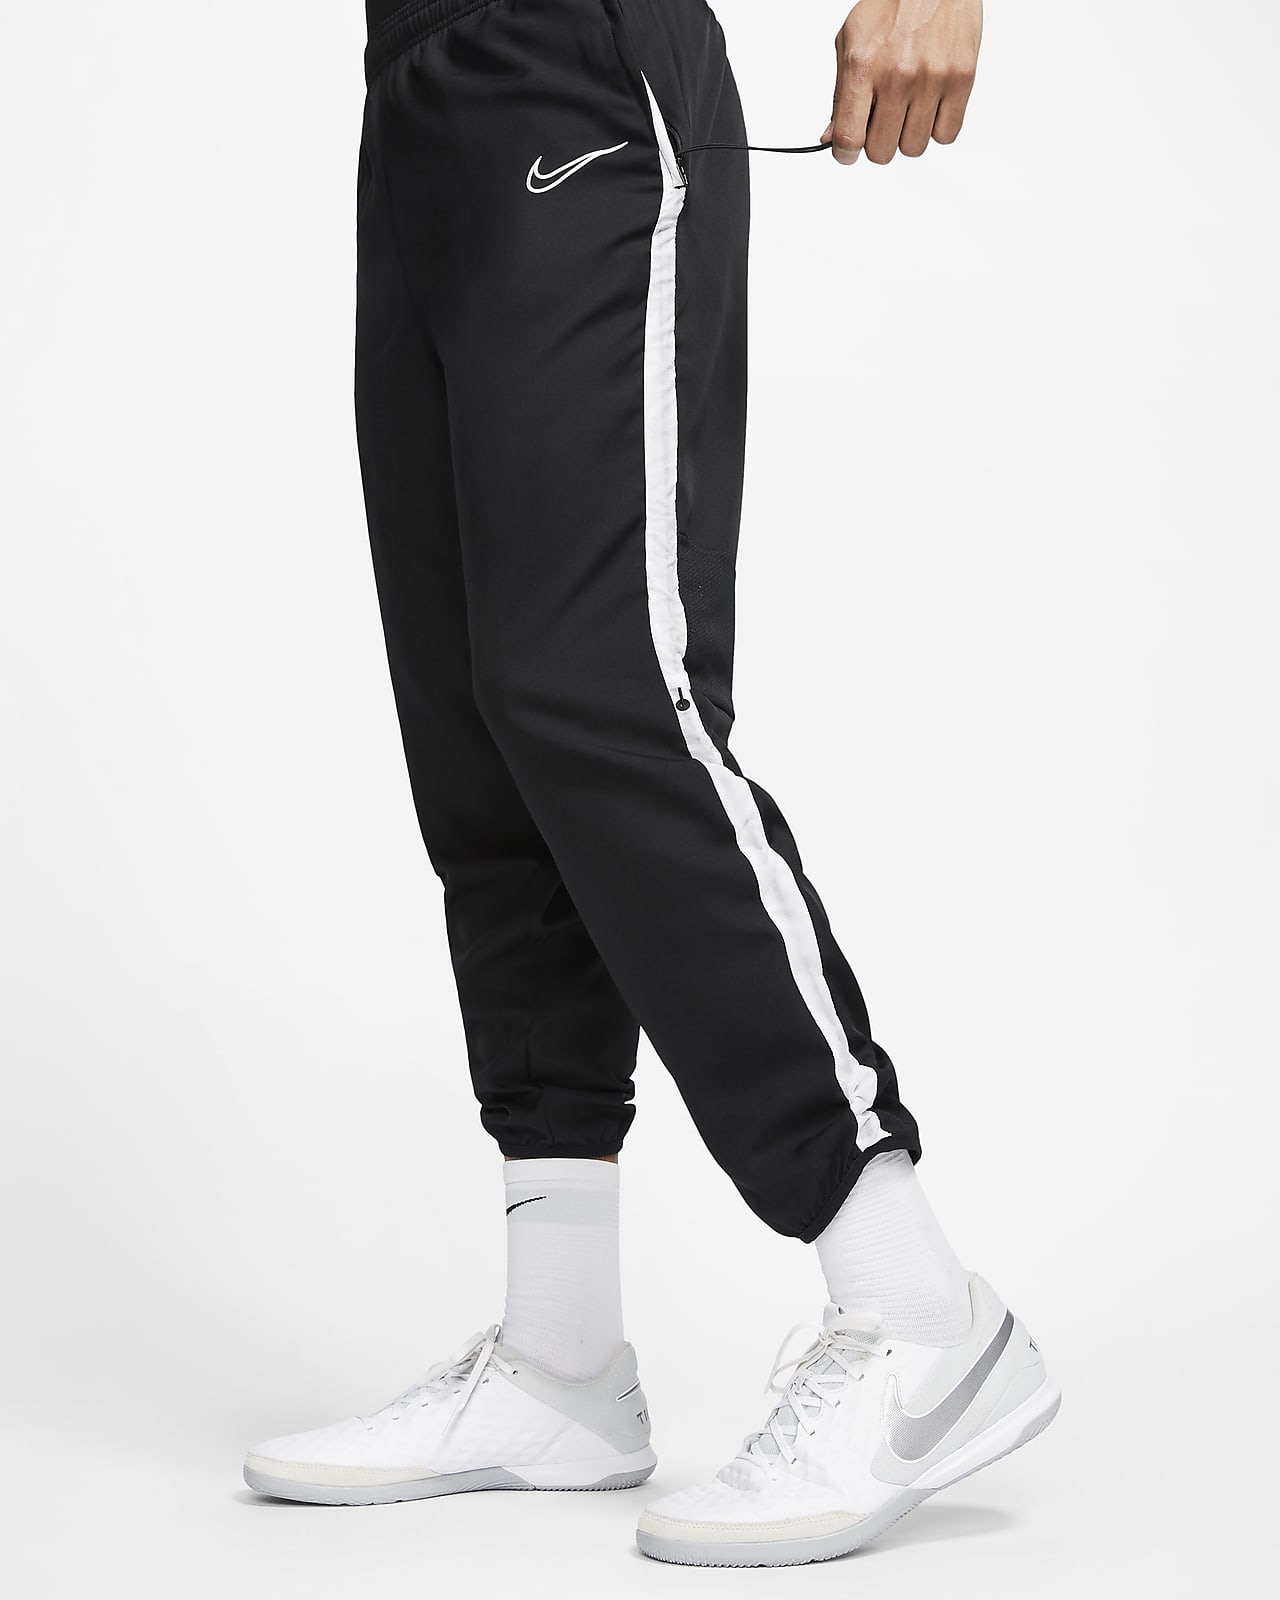 Pantalones de fútbol ajustables para hombre Nike Dri-FIT Academy. Nike.com